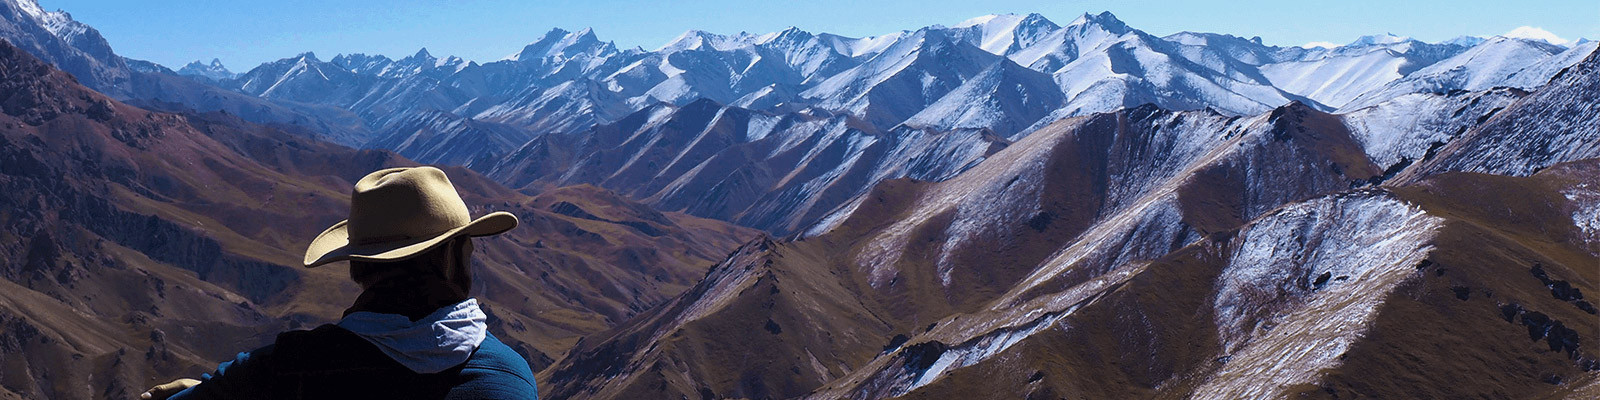 Voyage Kirghizistan solidaire, responsable et durable pour découvrir le Kirghizistan